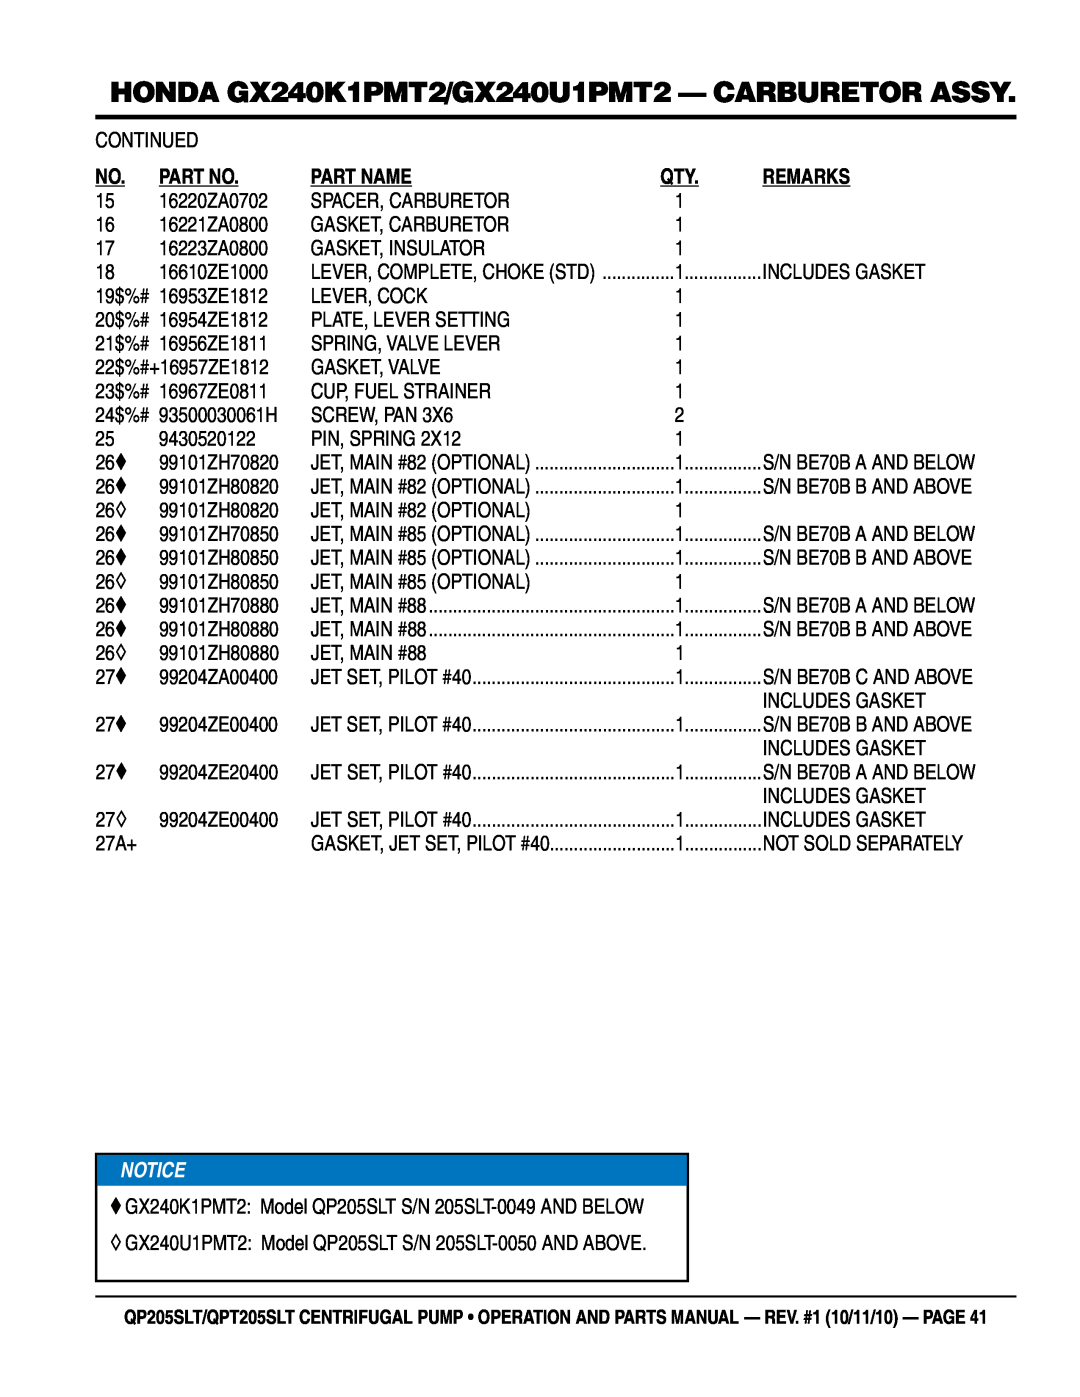 Multiquip QPT205SLT, QP205SLT manual honda GX240K1PMT2/GX240U1PMT2 - carburetor assy, Part Name, Remarks 